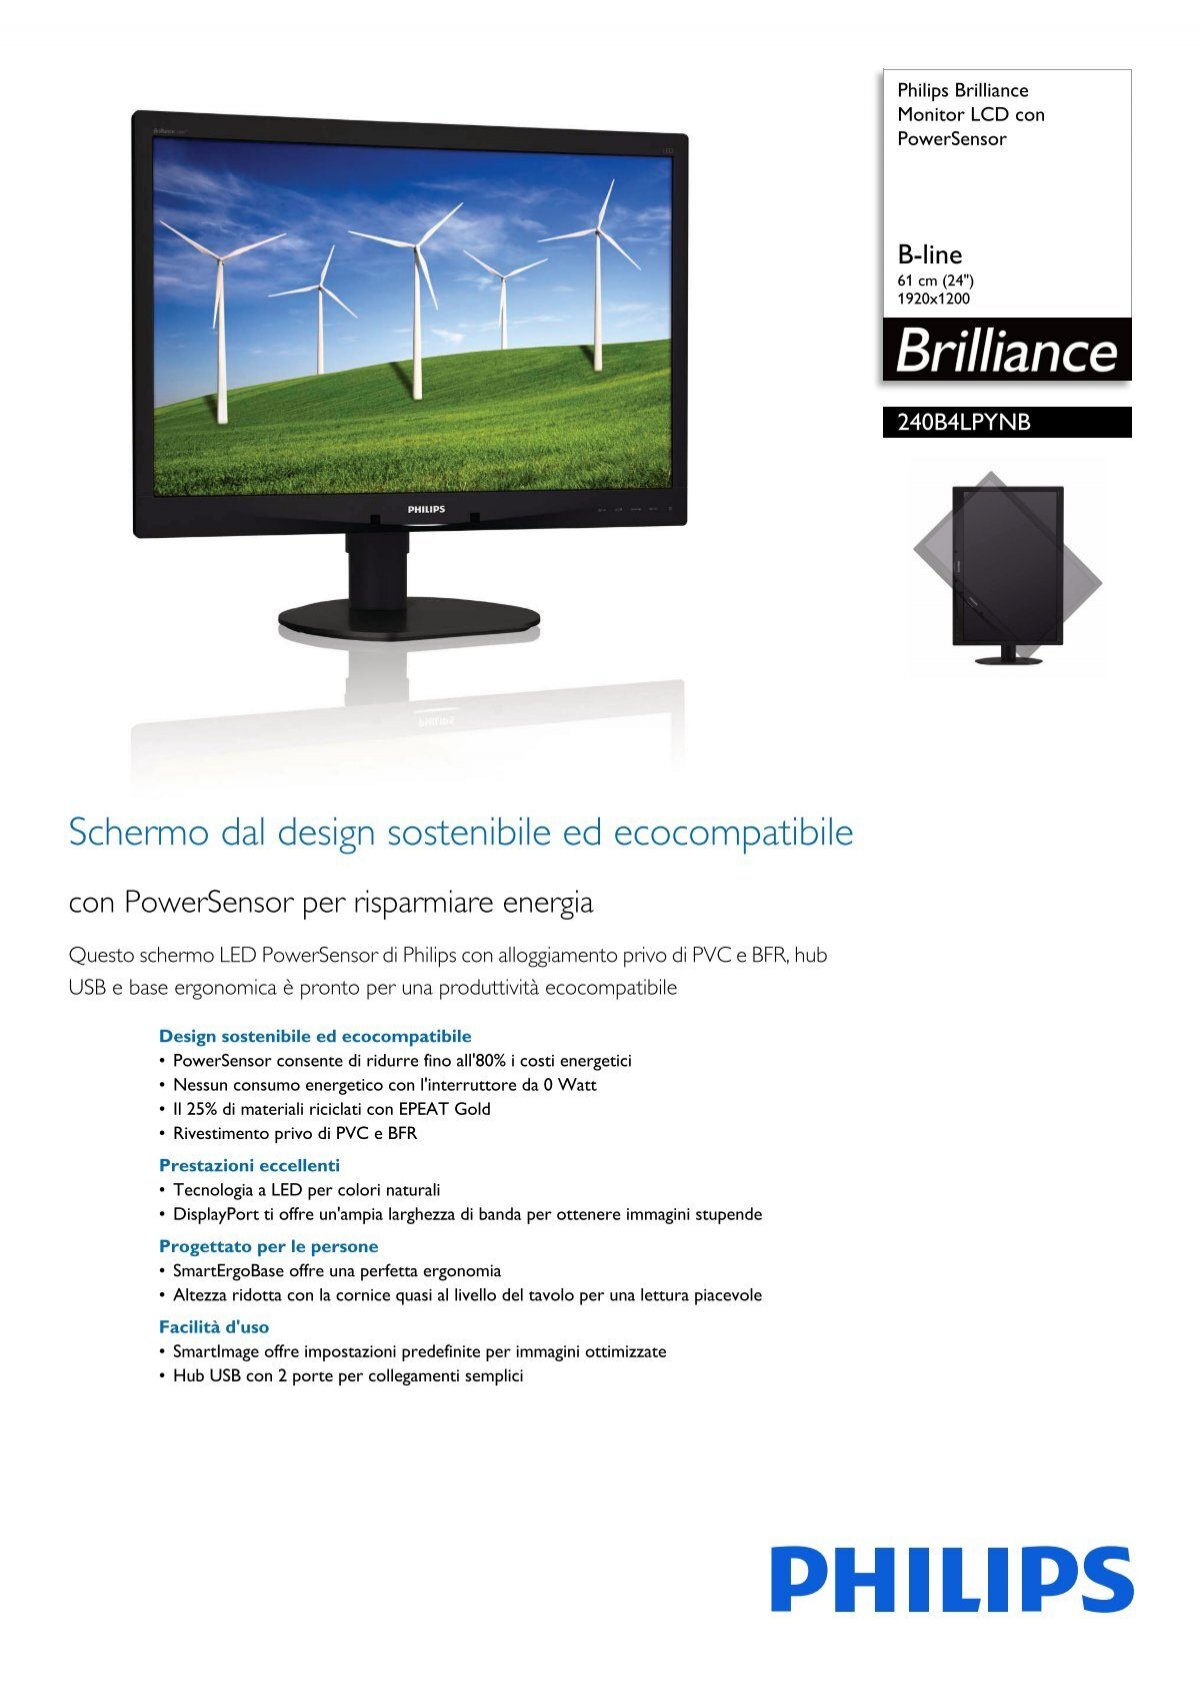 Philips Brilliance Monitor Lcd Con Powersensor Scheda Tecnica Ita